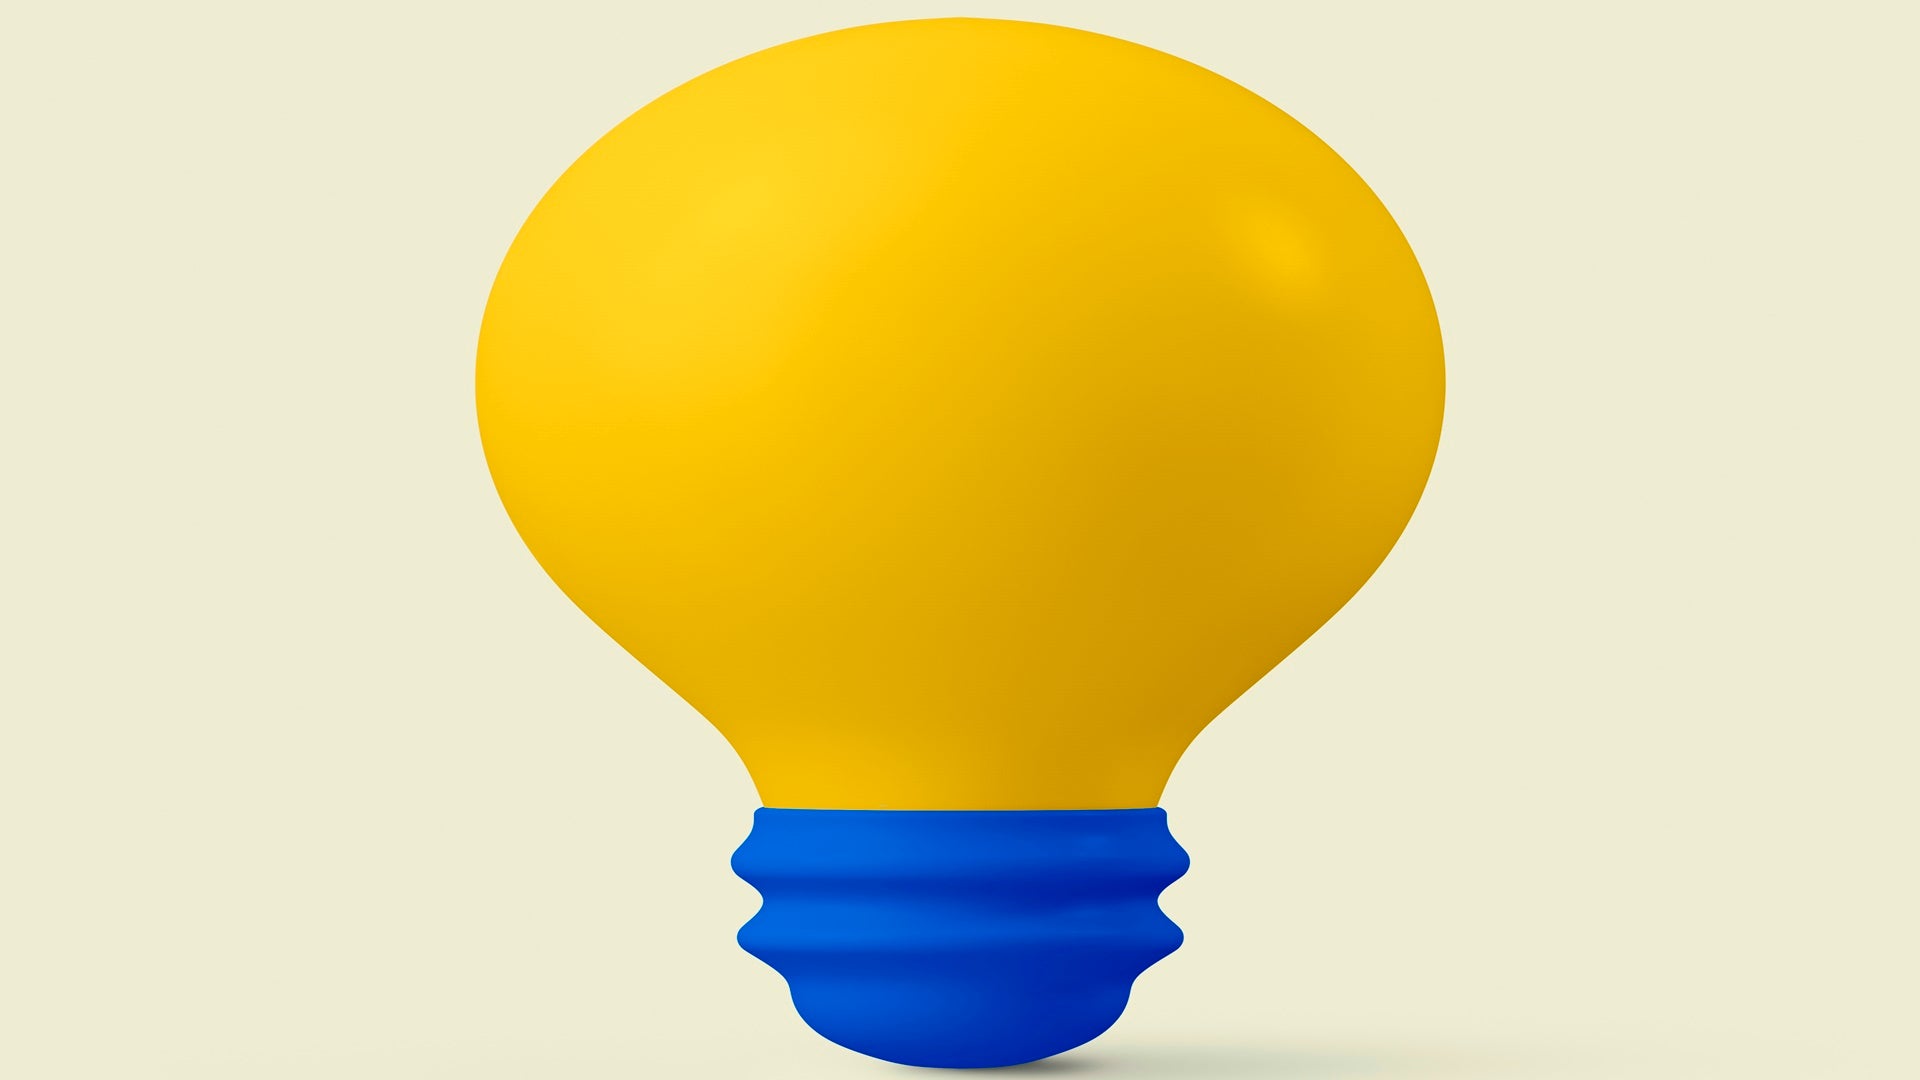 3D light bulb clipart, education graphic